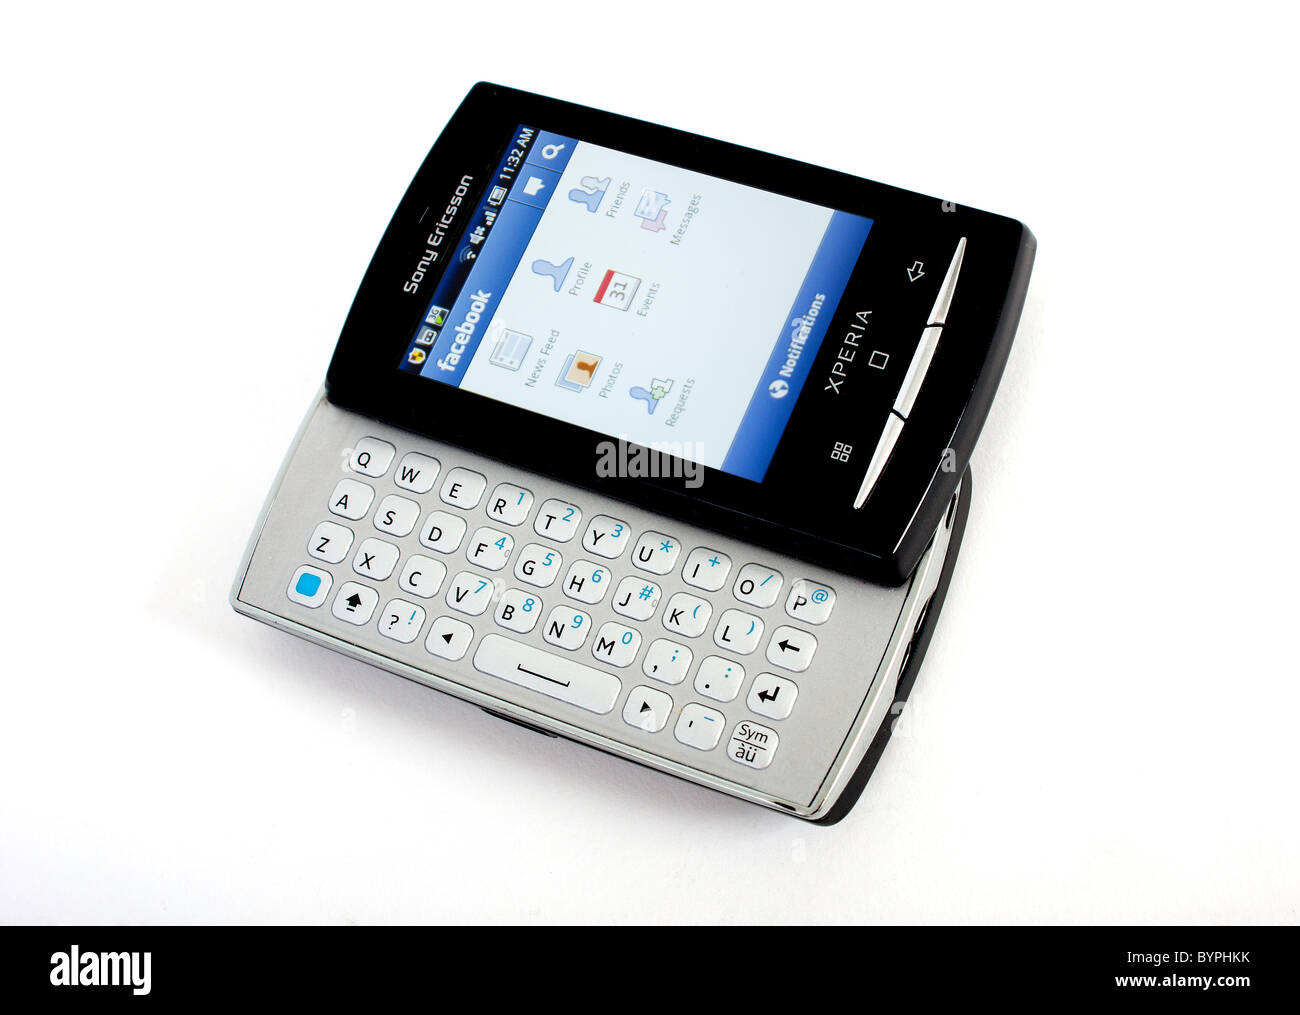 El nuevo Sony Ericsson Xperia mini pro teléfono móvil con teclado Qwerty  extraíble; mostrando Google androides Facebook Fotografía de stock - Alamy